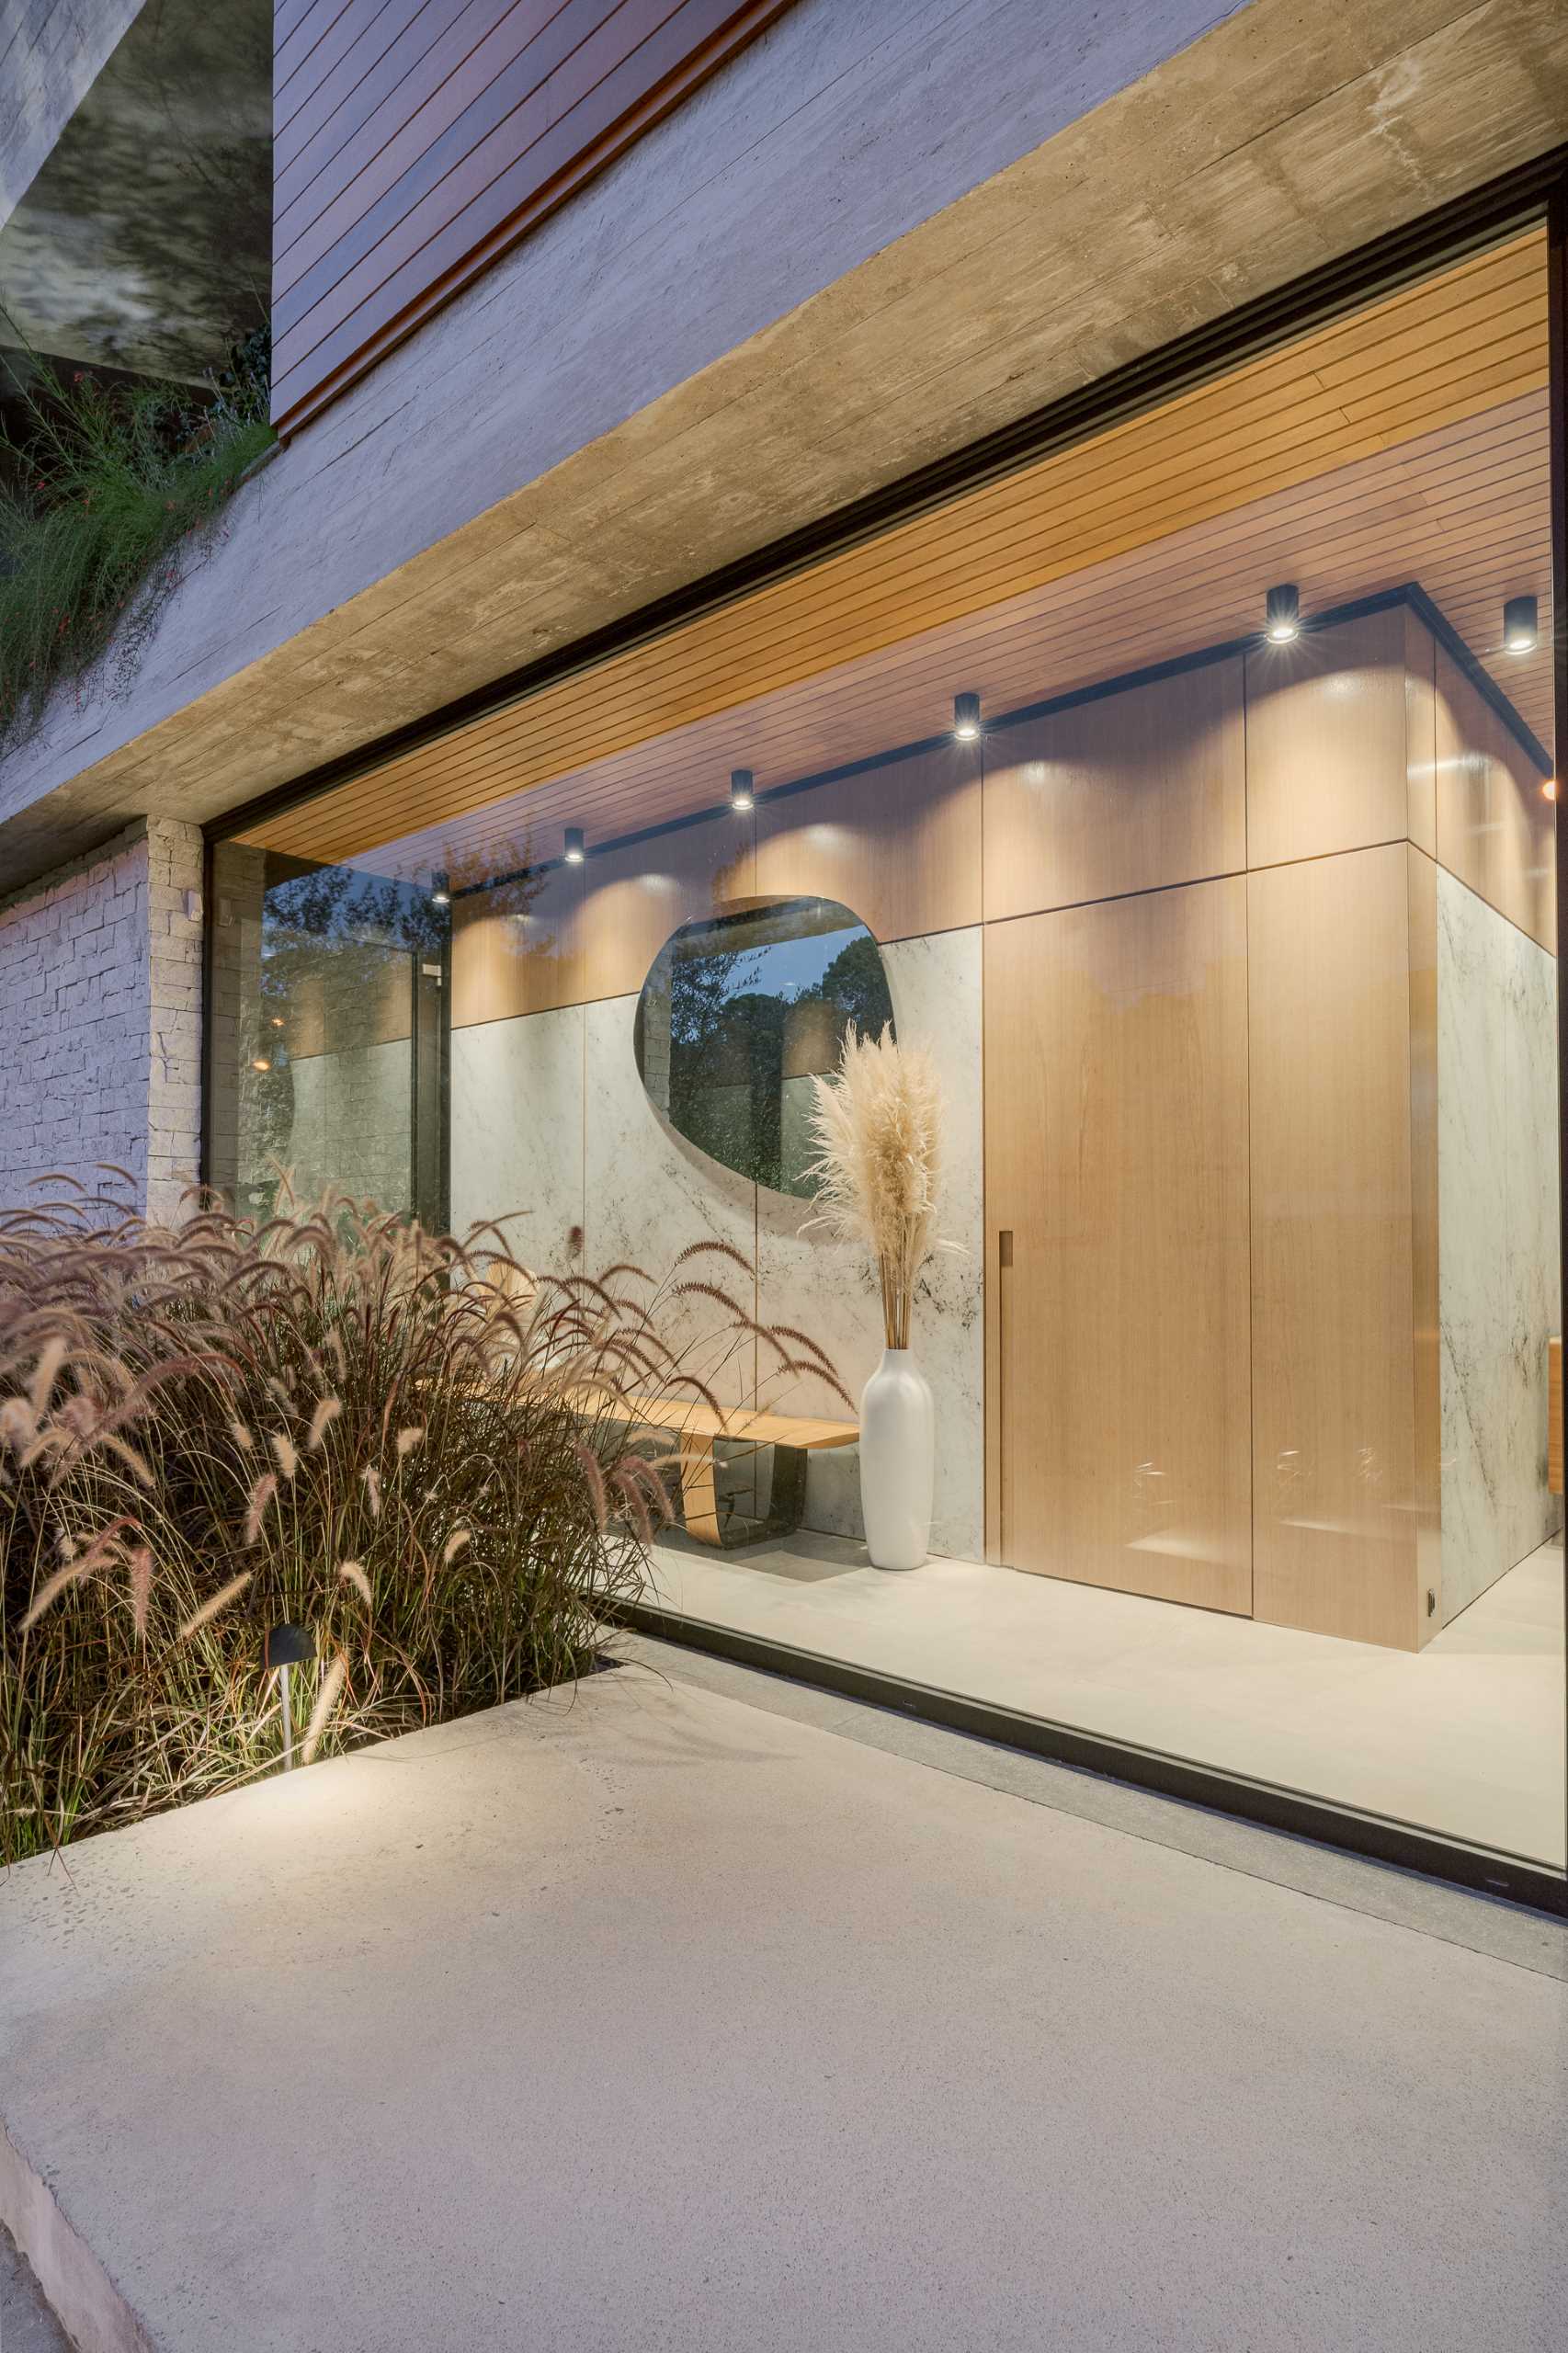 یک ورودی مدرن با پنجره های از کف تا سقف و یک نیمکت، دسترسی به اتاق پودر را فراهم می کند.